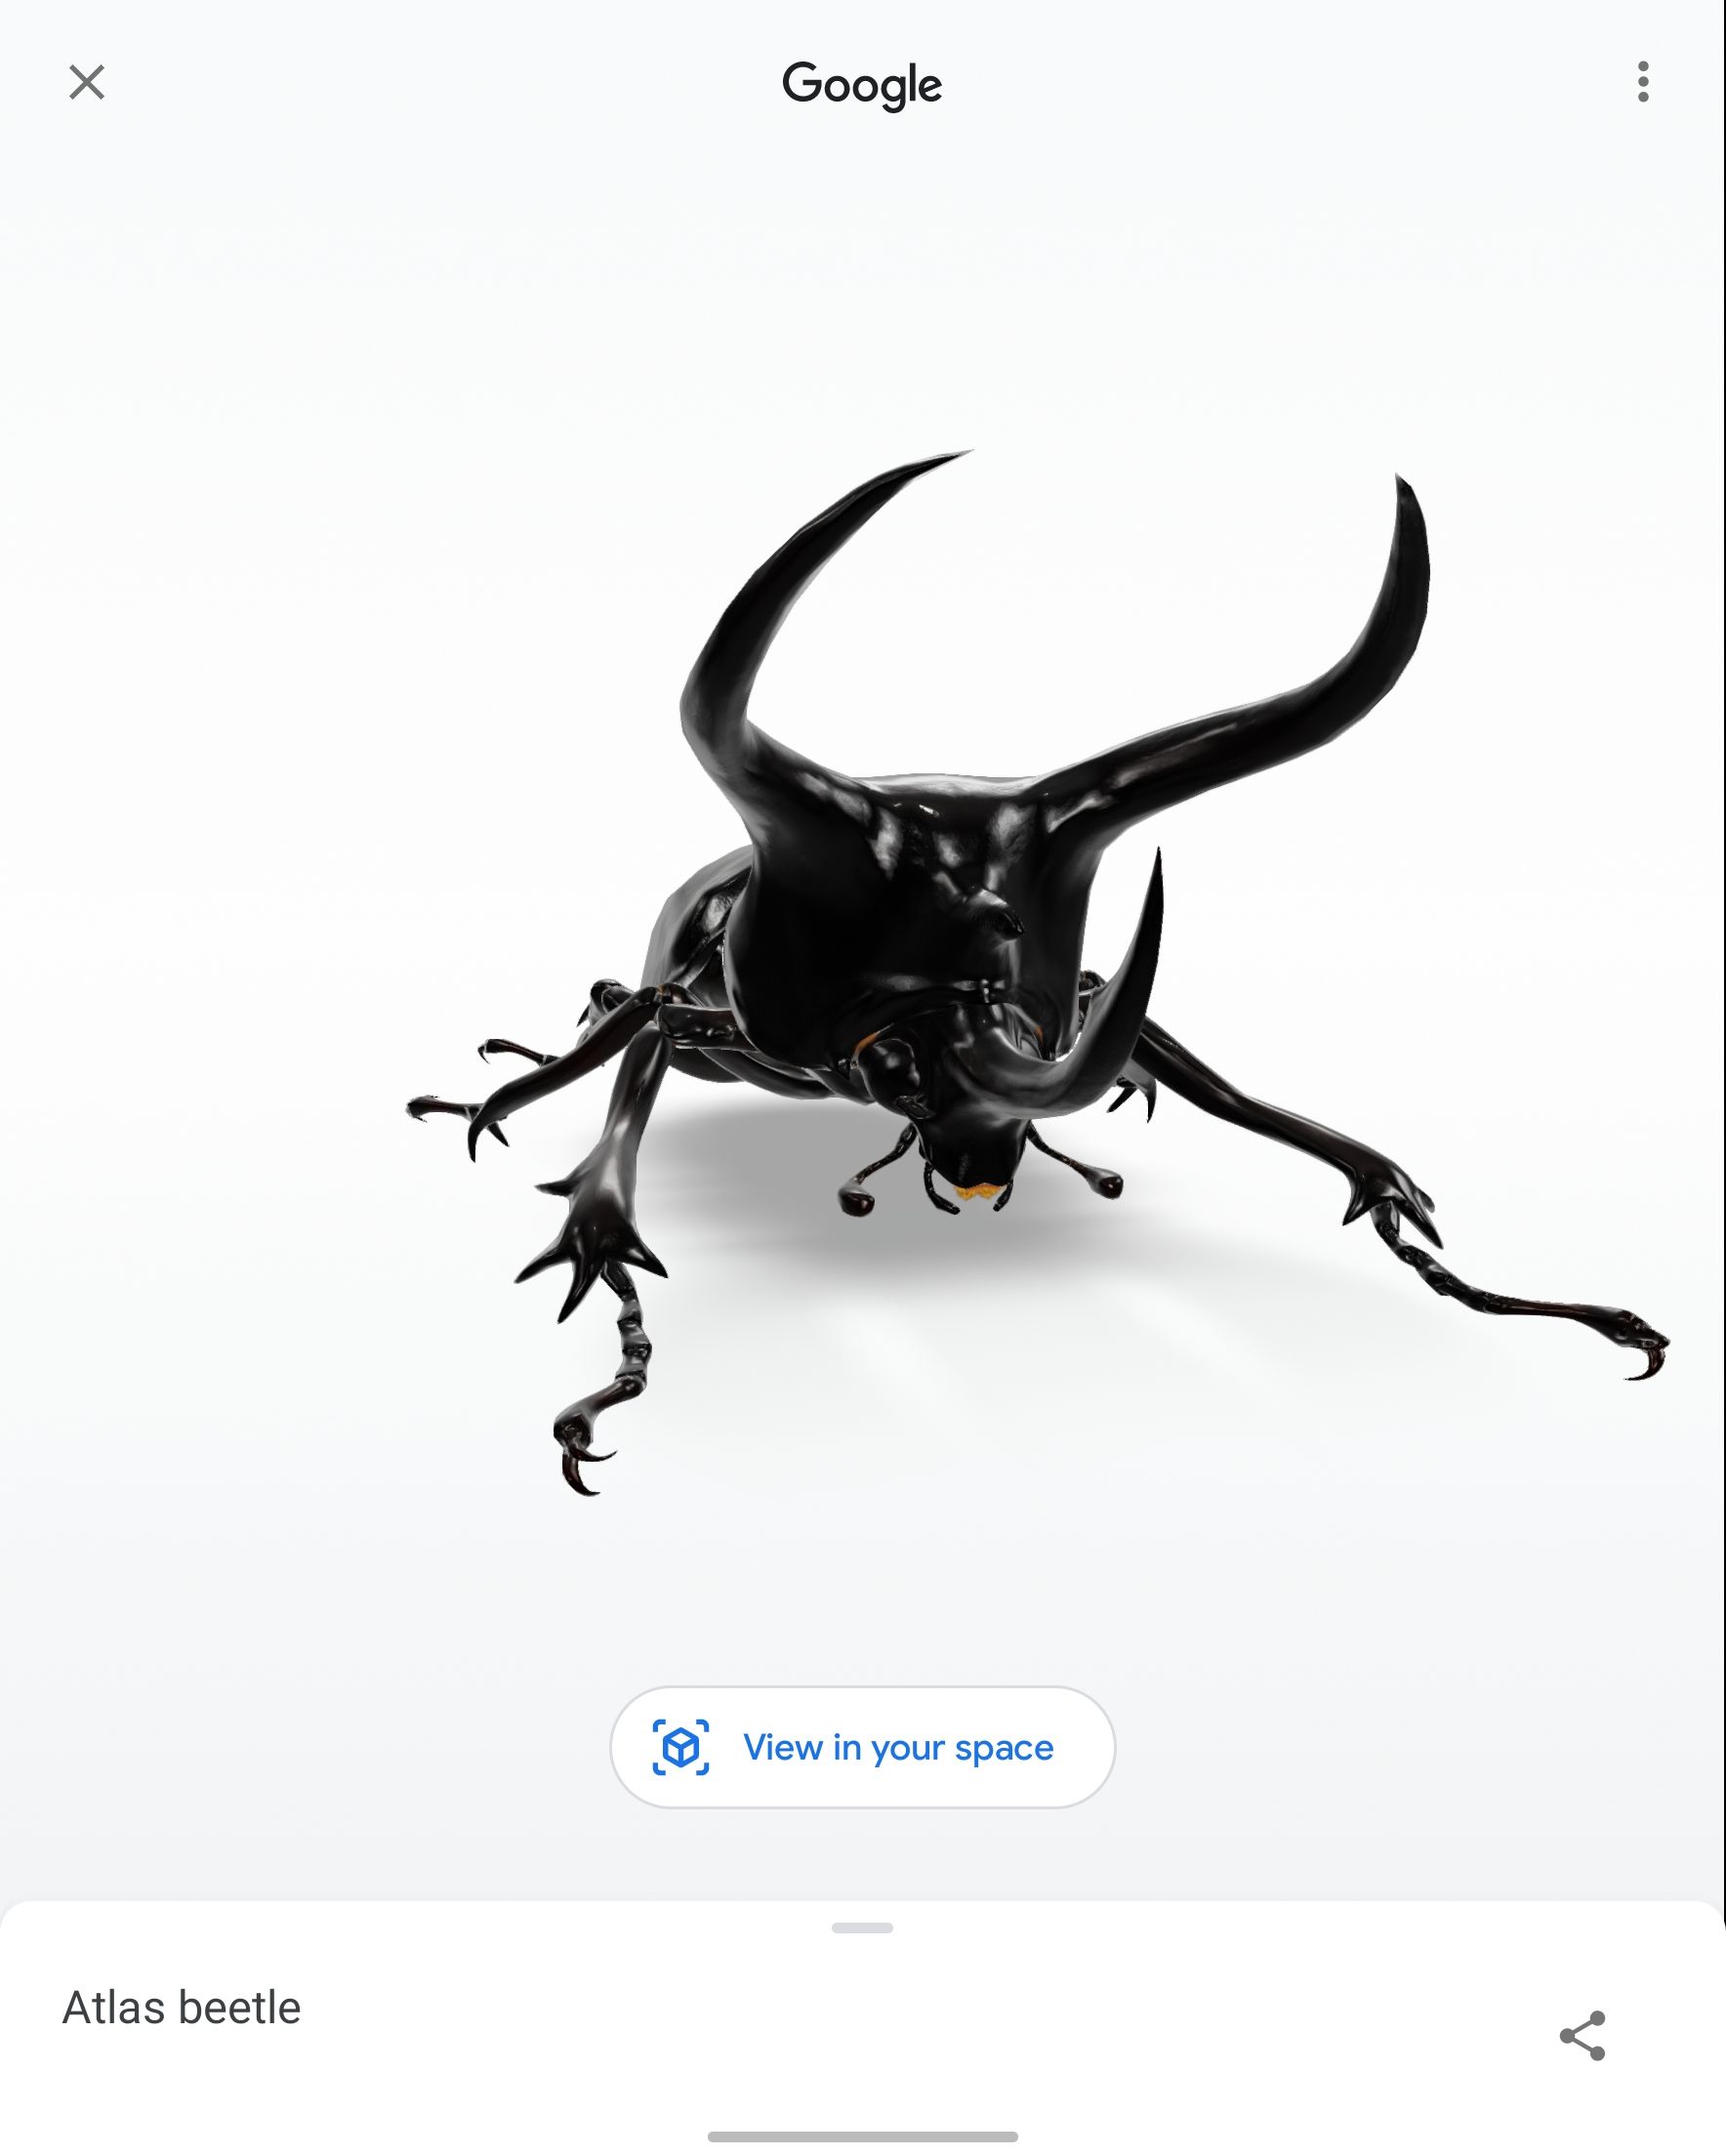 Captura de tela de um besouro 3D gerado pelo Google